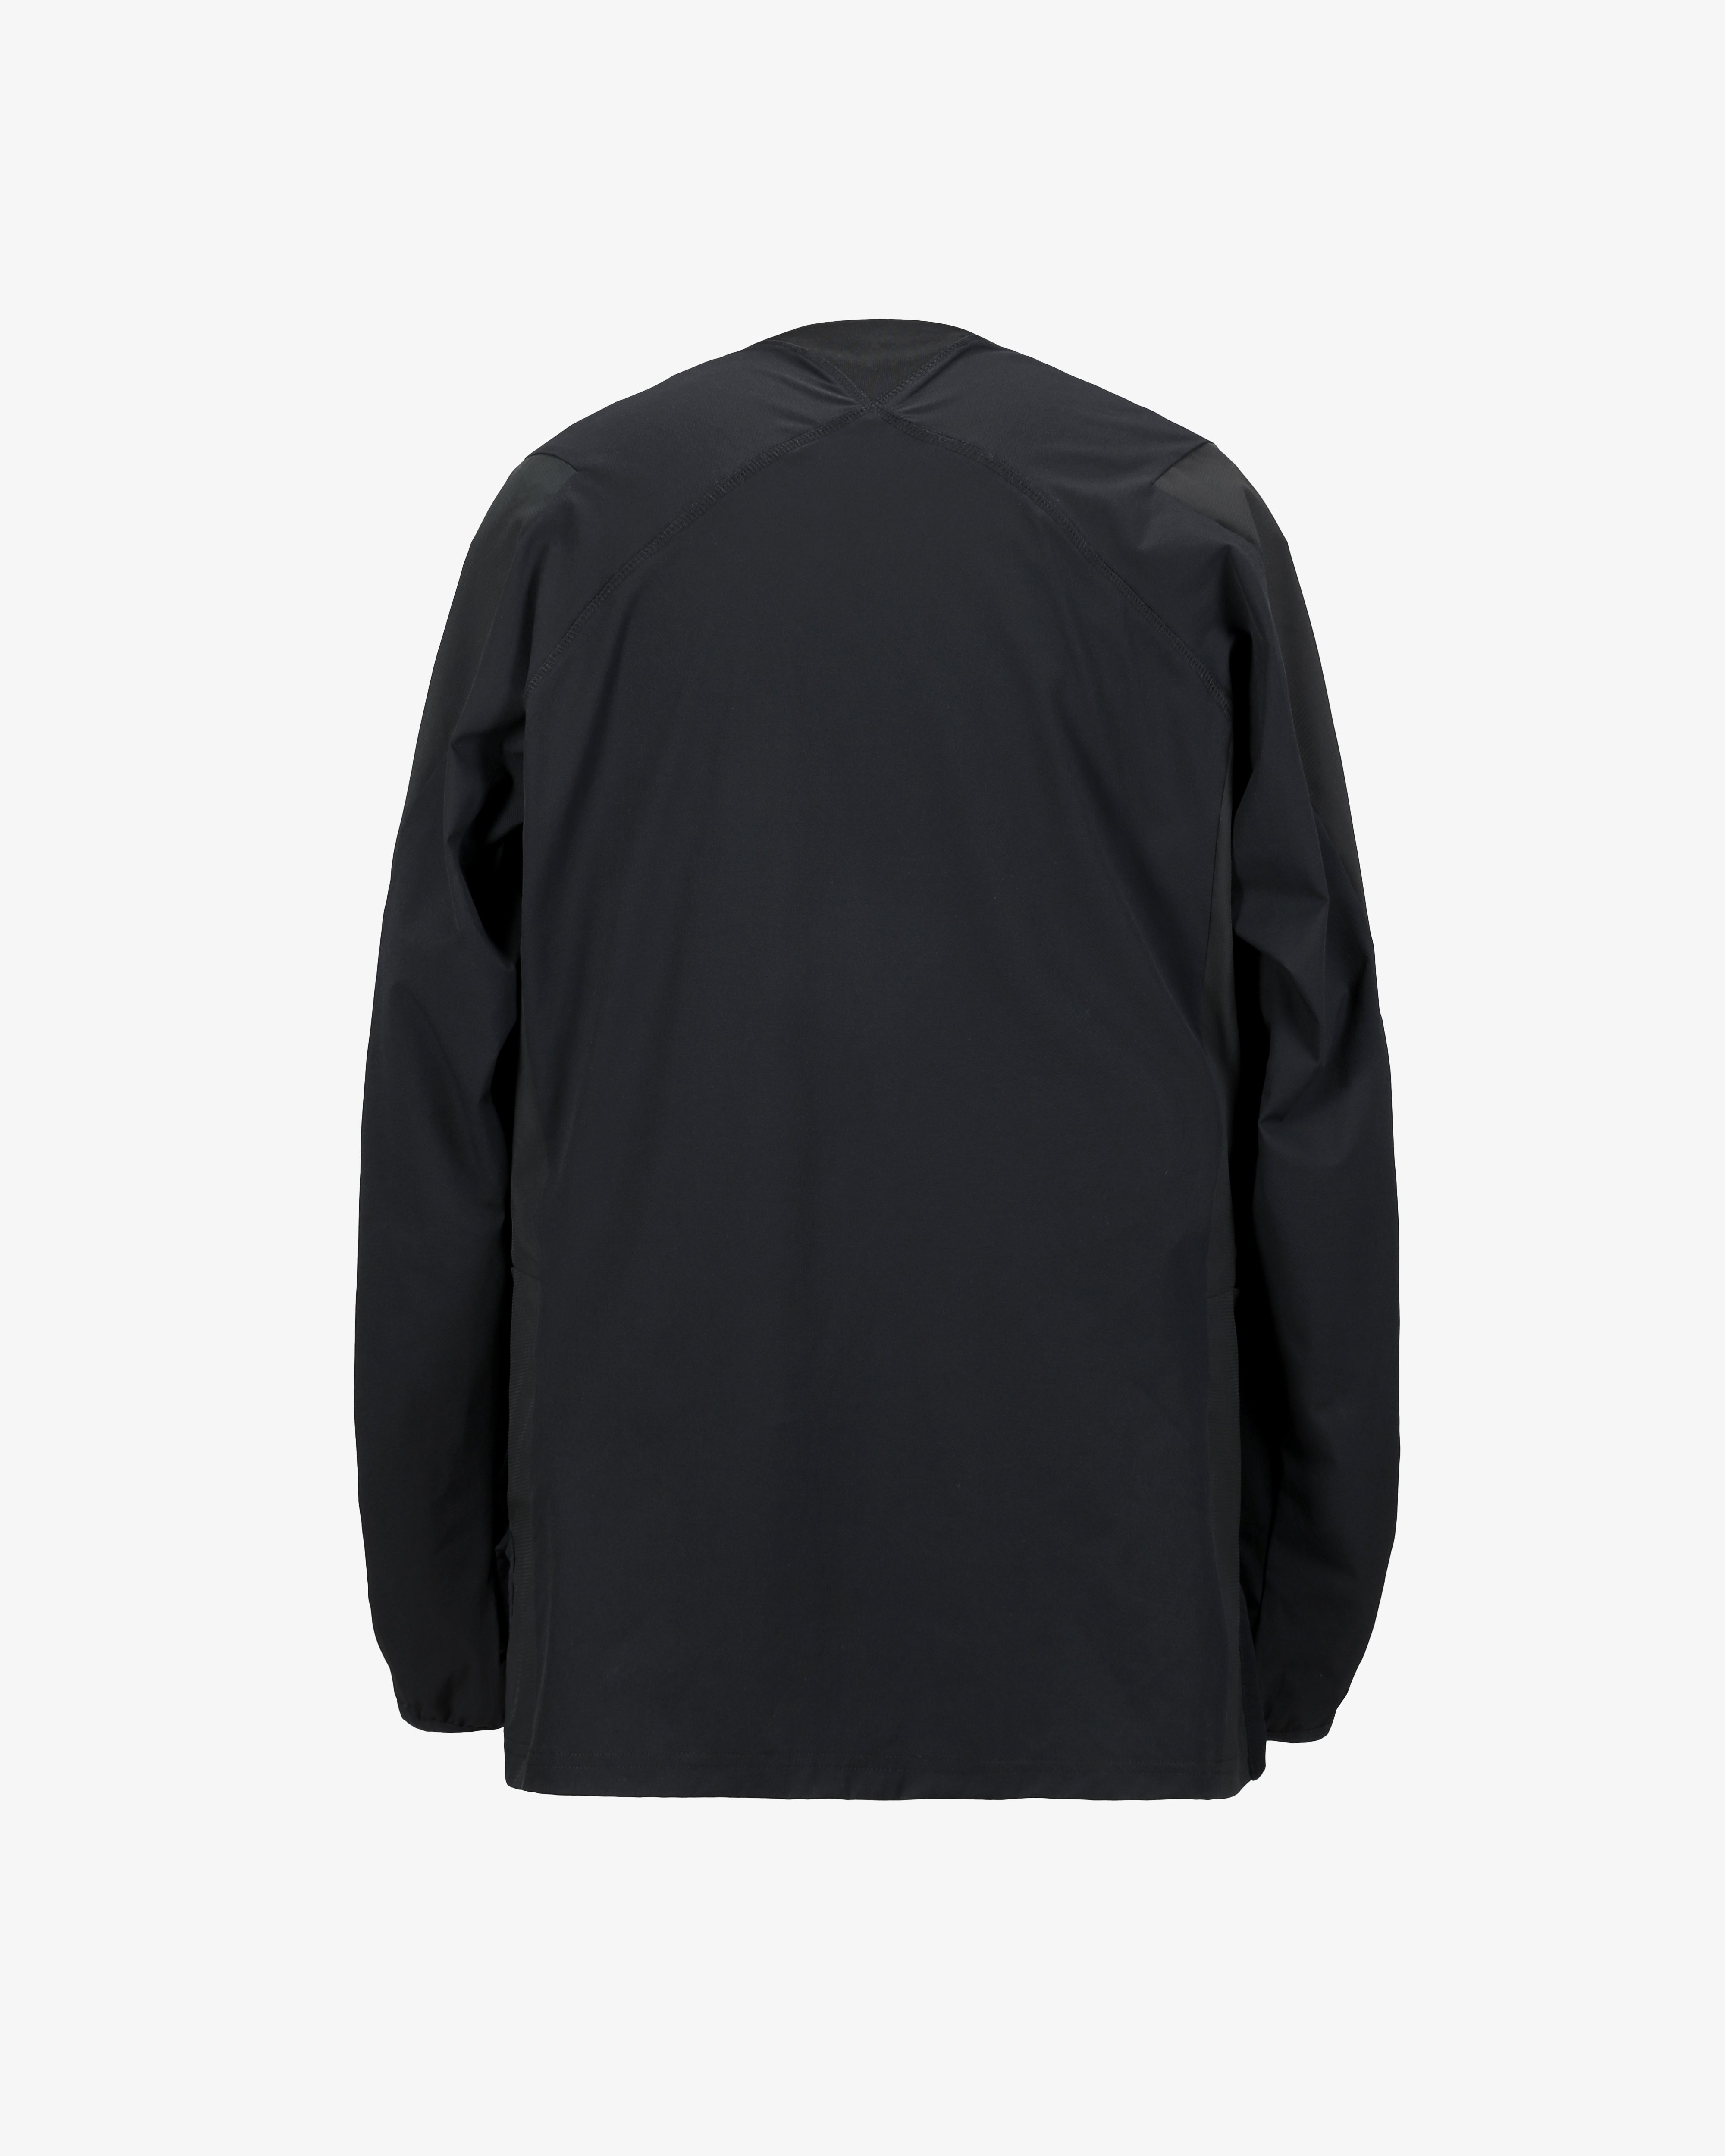 187 Quick Drying Long Sleeve Shirt Black